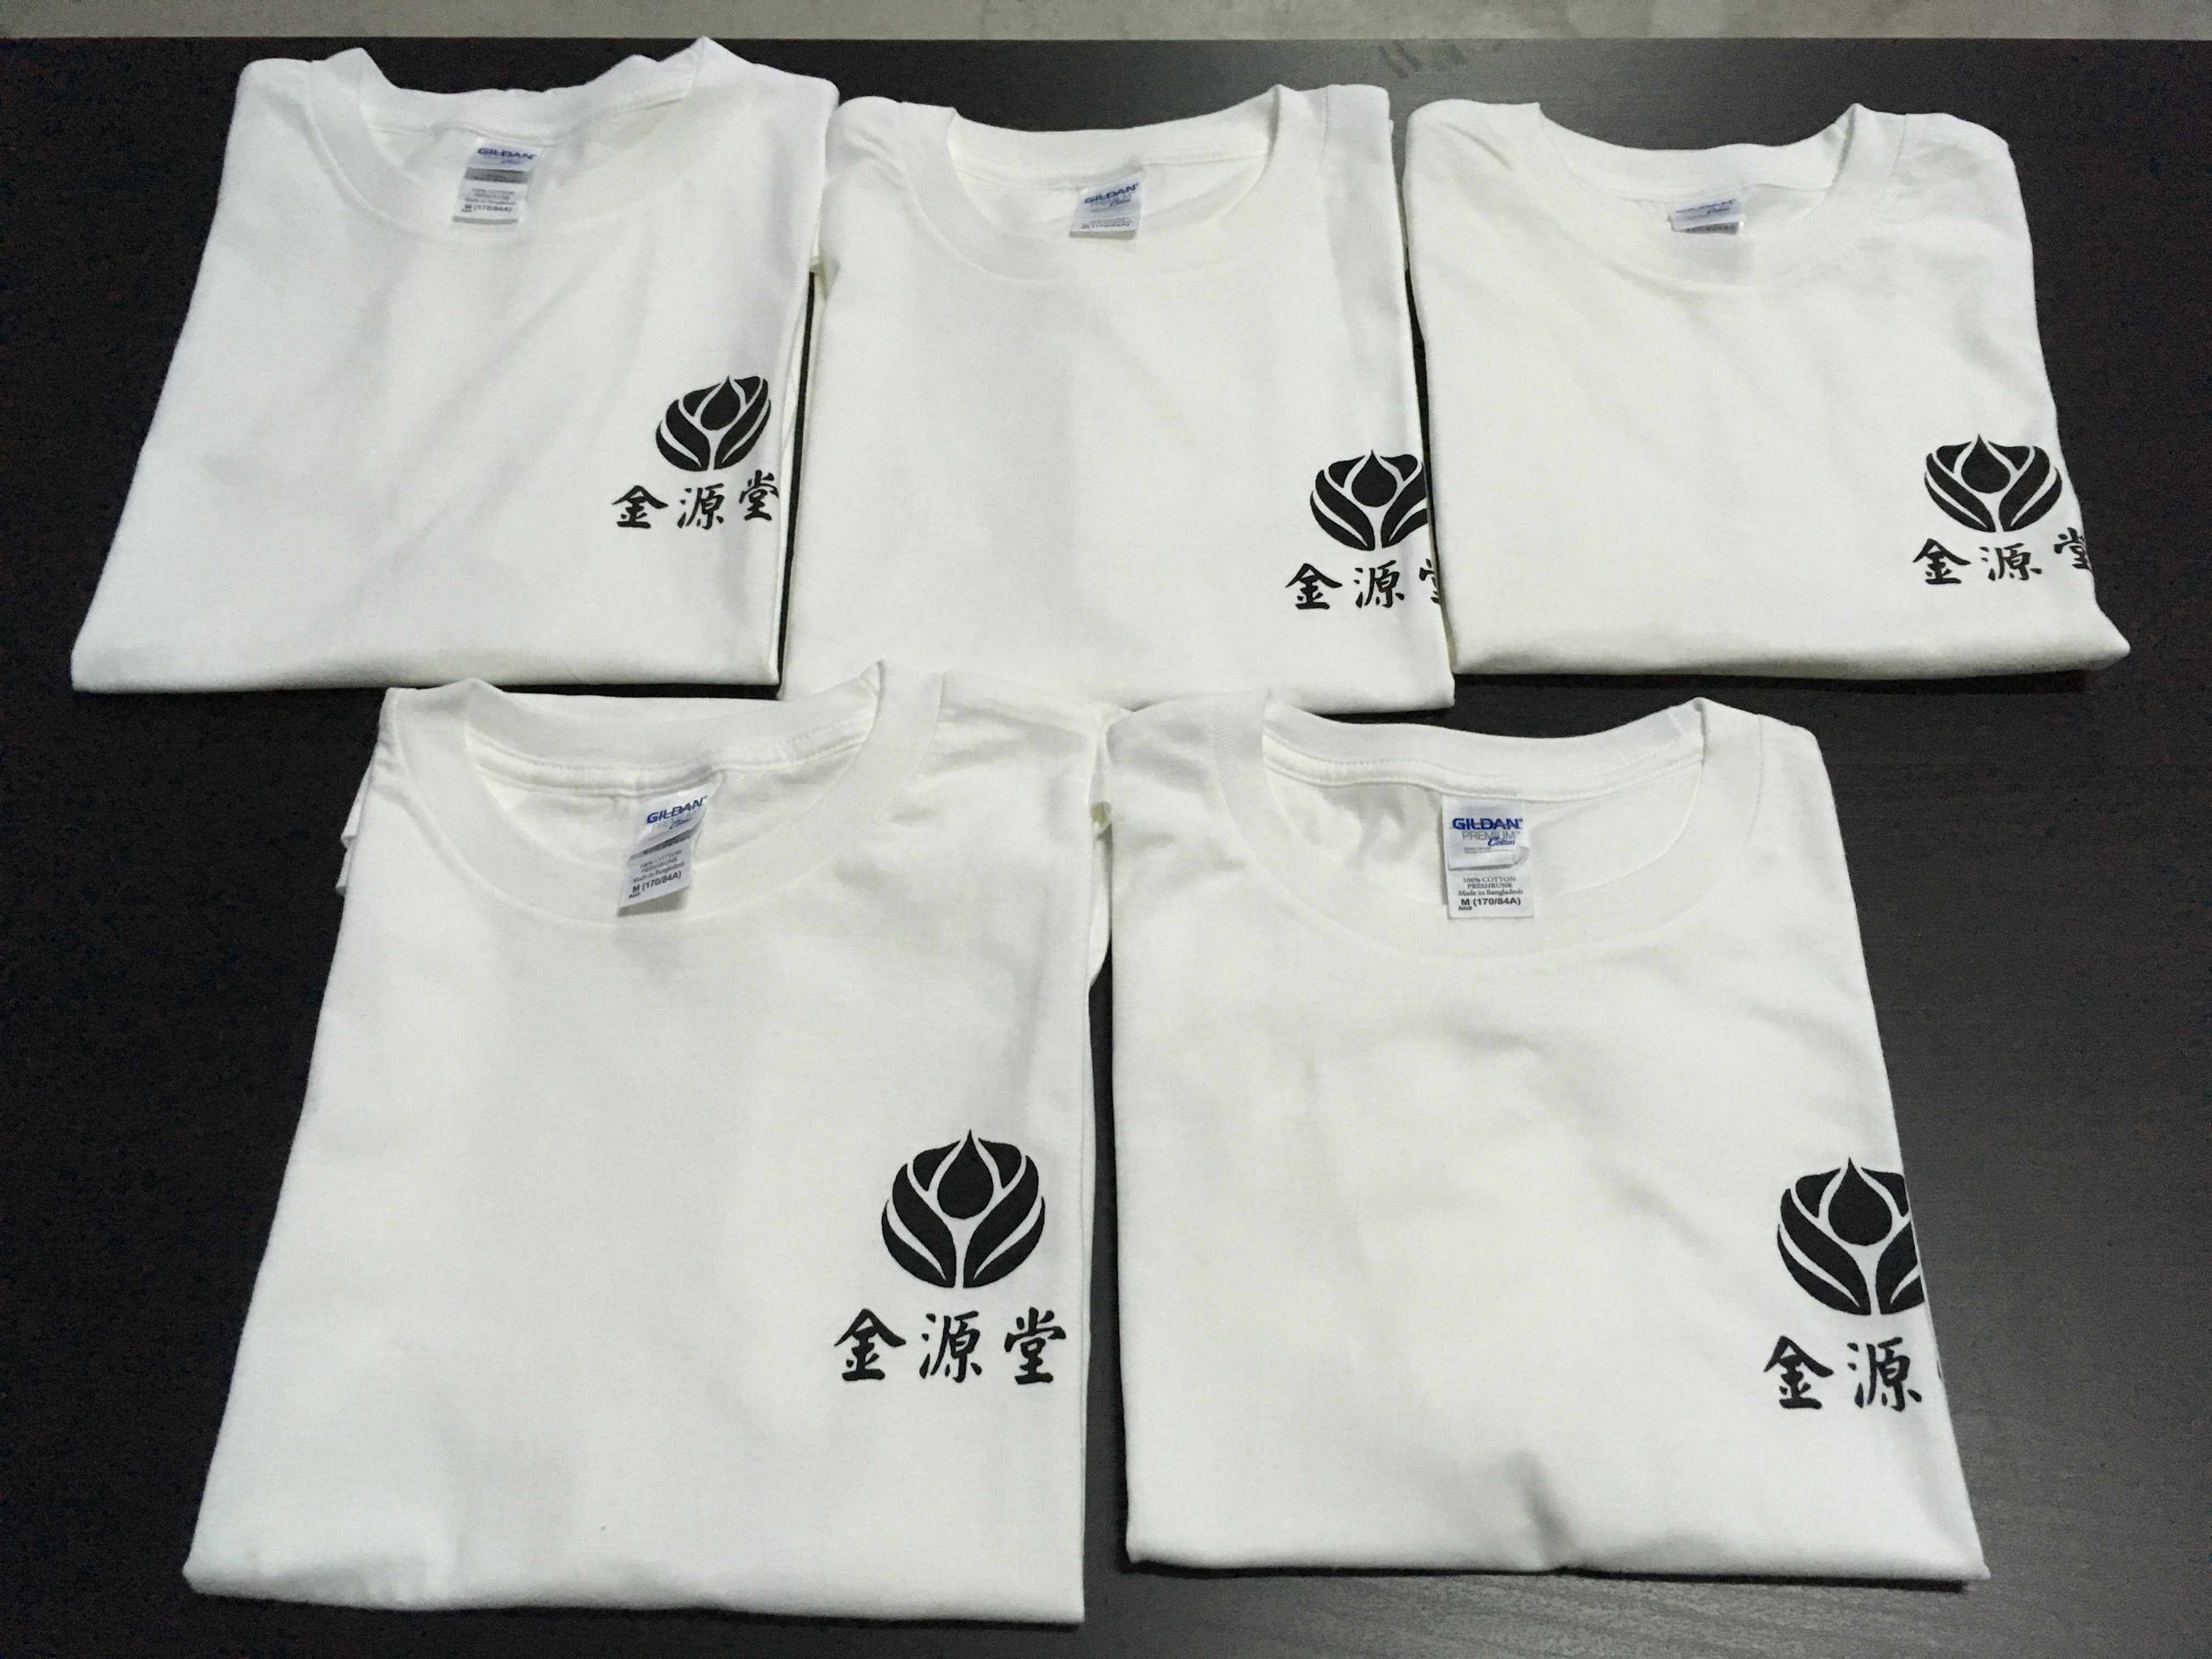 金源堂T恤的第1張圖(客製化公司制服、班服製作、團體服製作等示意或作品圖)